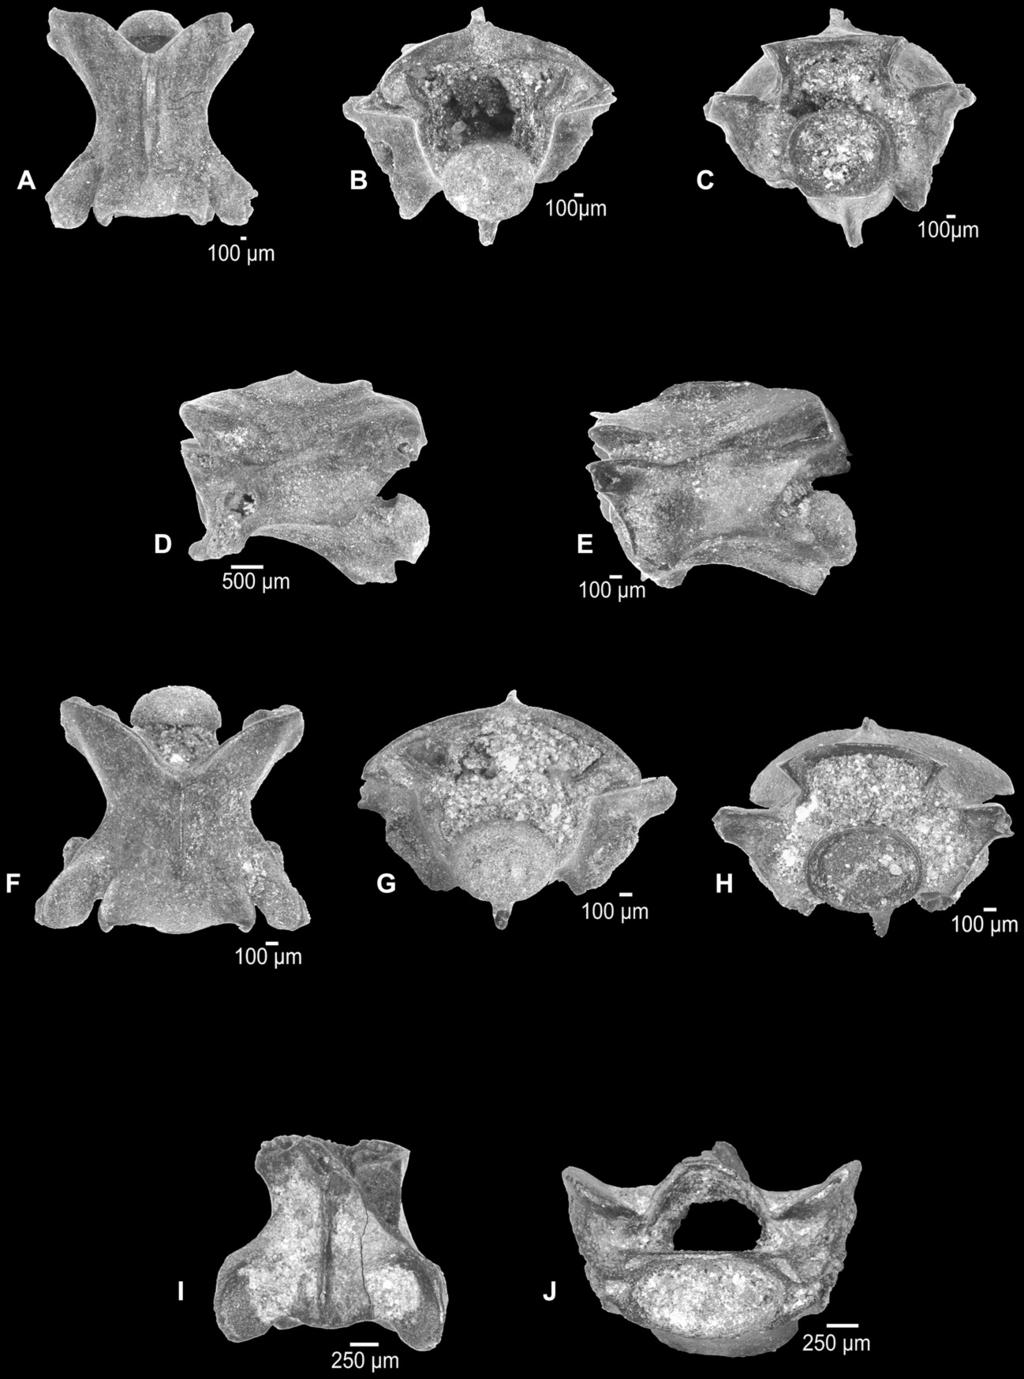 68 M. Böhme / Quaternary International 228 (2010) 63e71 Fig. 4. AeD: Natri natri, thoracic vertebra (square 74, sample 74), A e dorsal, B e posterior, C e anterior, D e lateral. EeH: Colubroid indet.